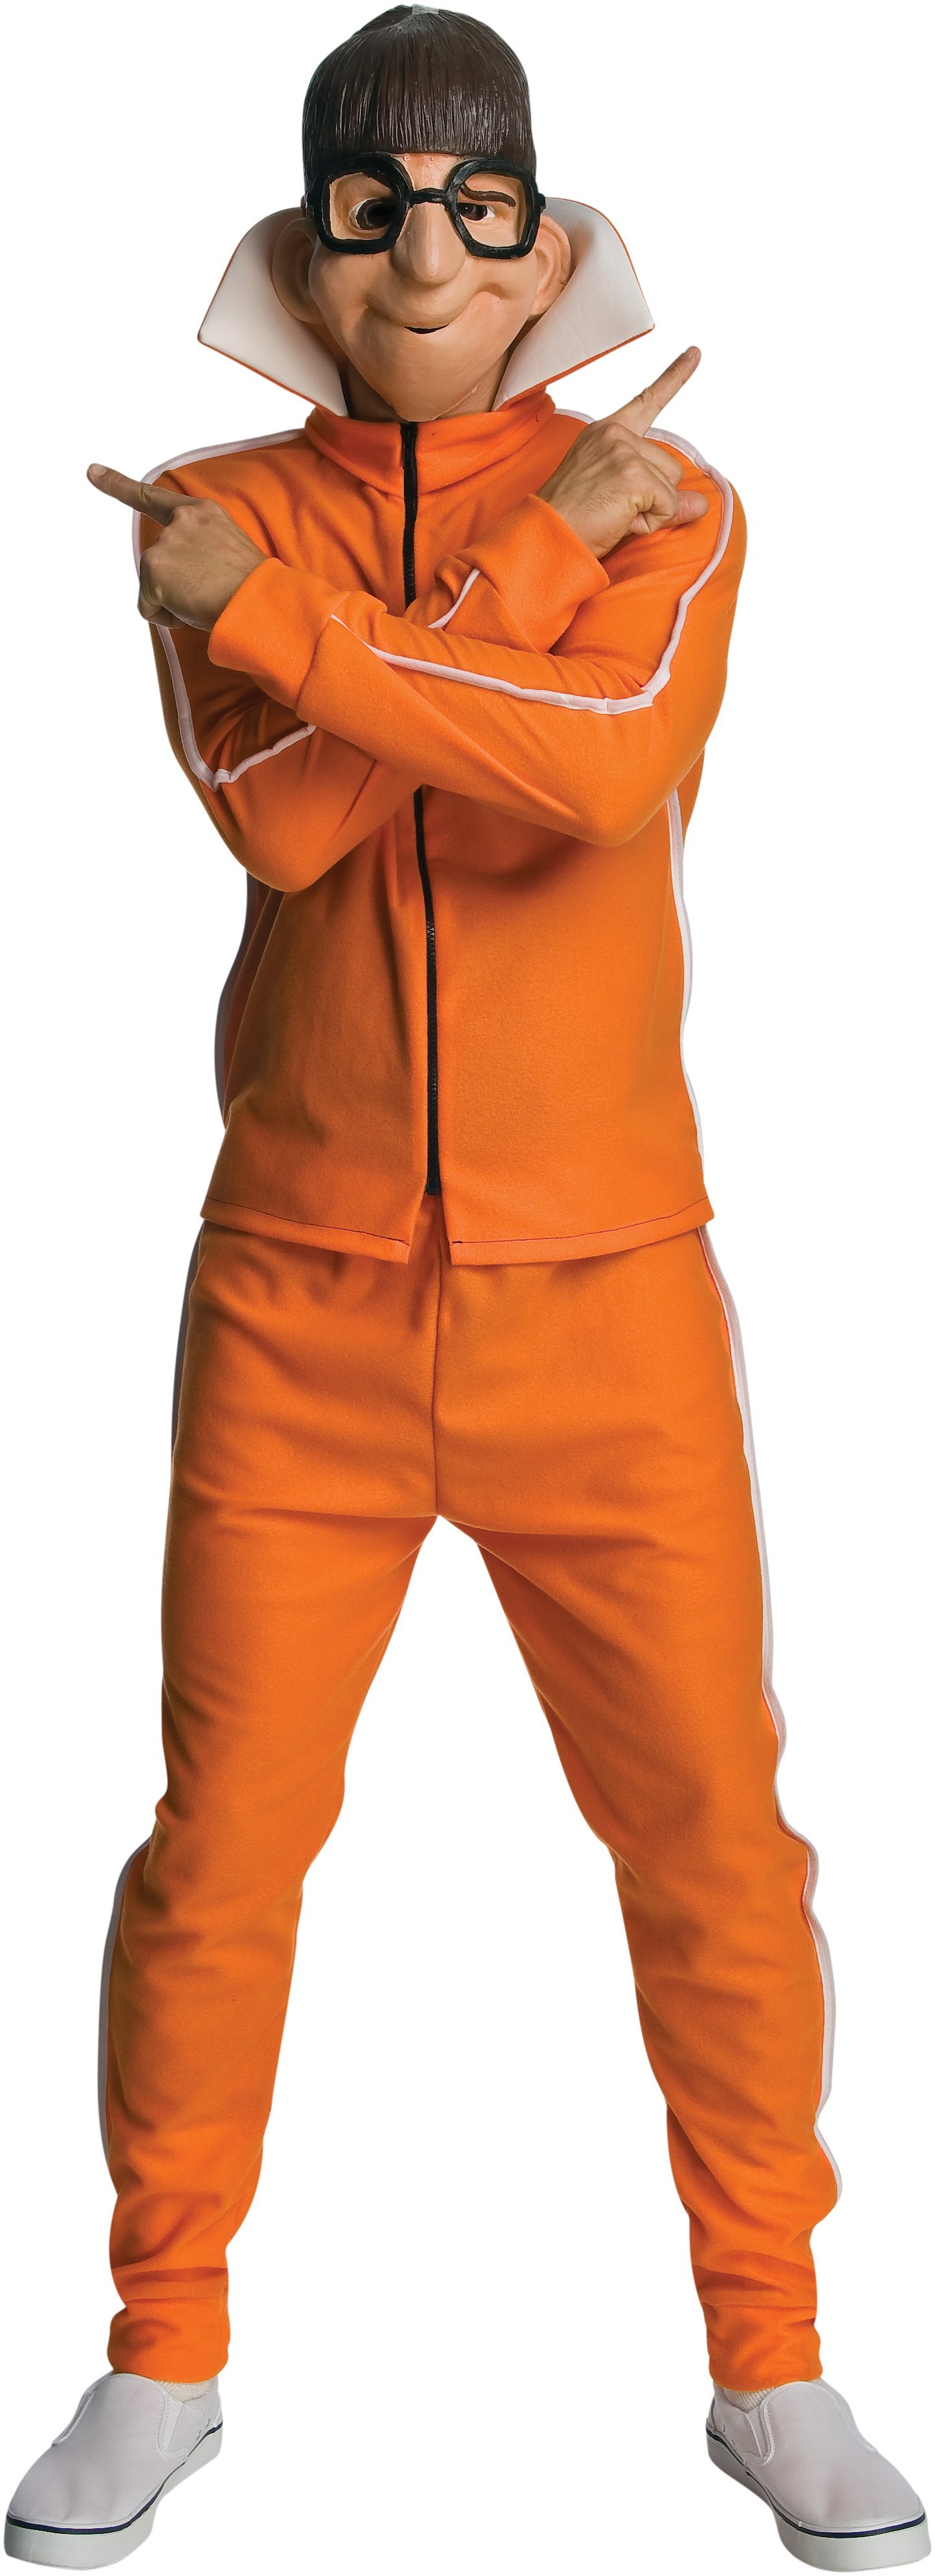 Конкурс кто твой оранжевый герой. Персонаж в оранжевом костюме. Миньоны чел в оранжевом костюме. Миньоны человек в оранжевом костюме. Минены , человек в орандевом кастуме.